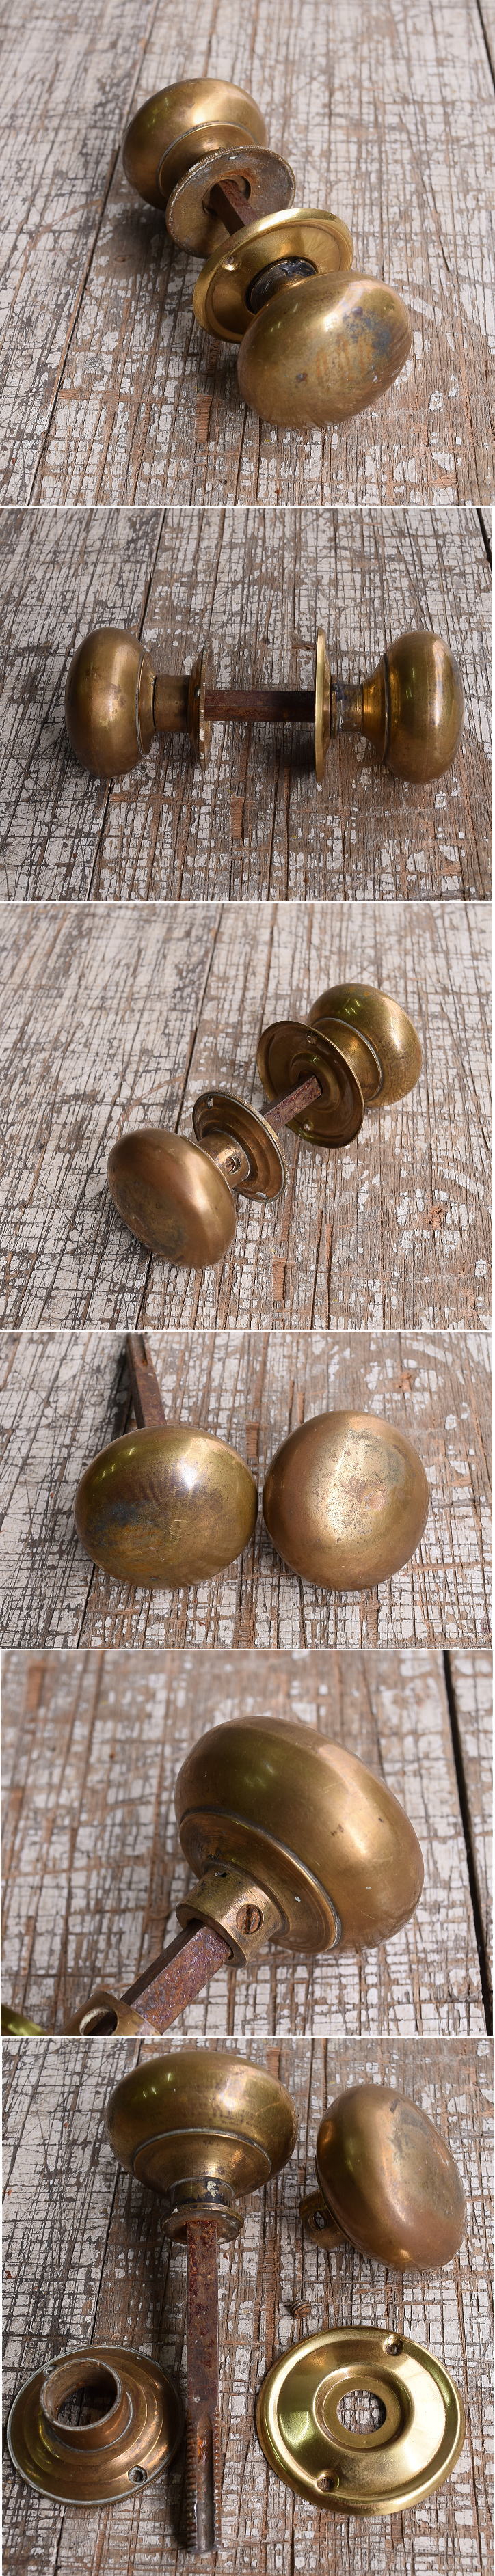 イギリス アンティーク 真鍮製 ドアノブ 建具金物 握り玉 10674